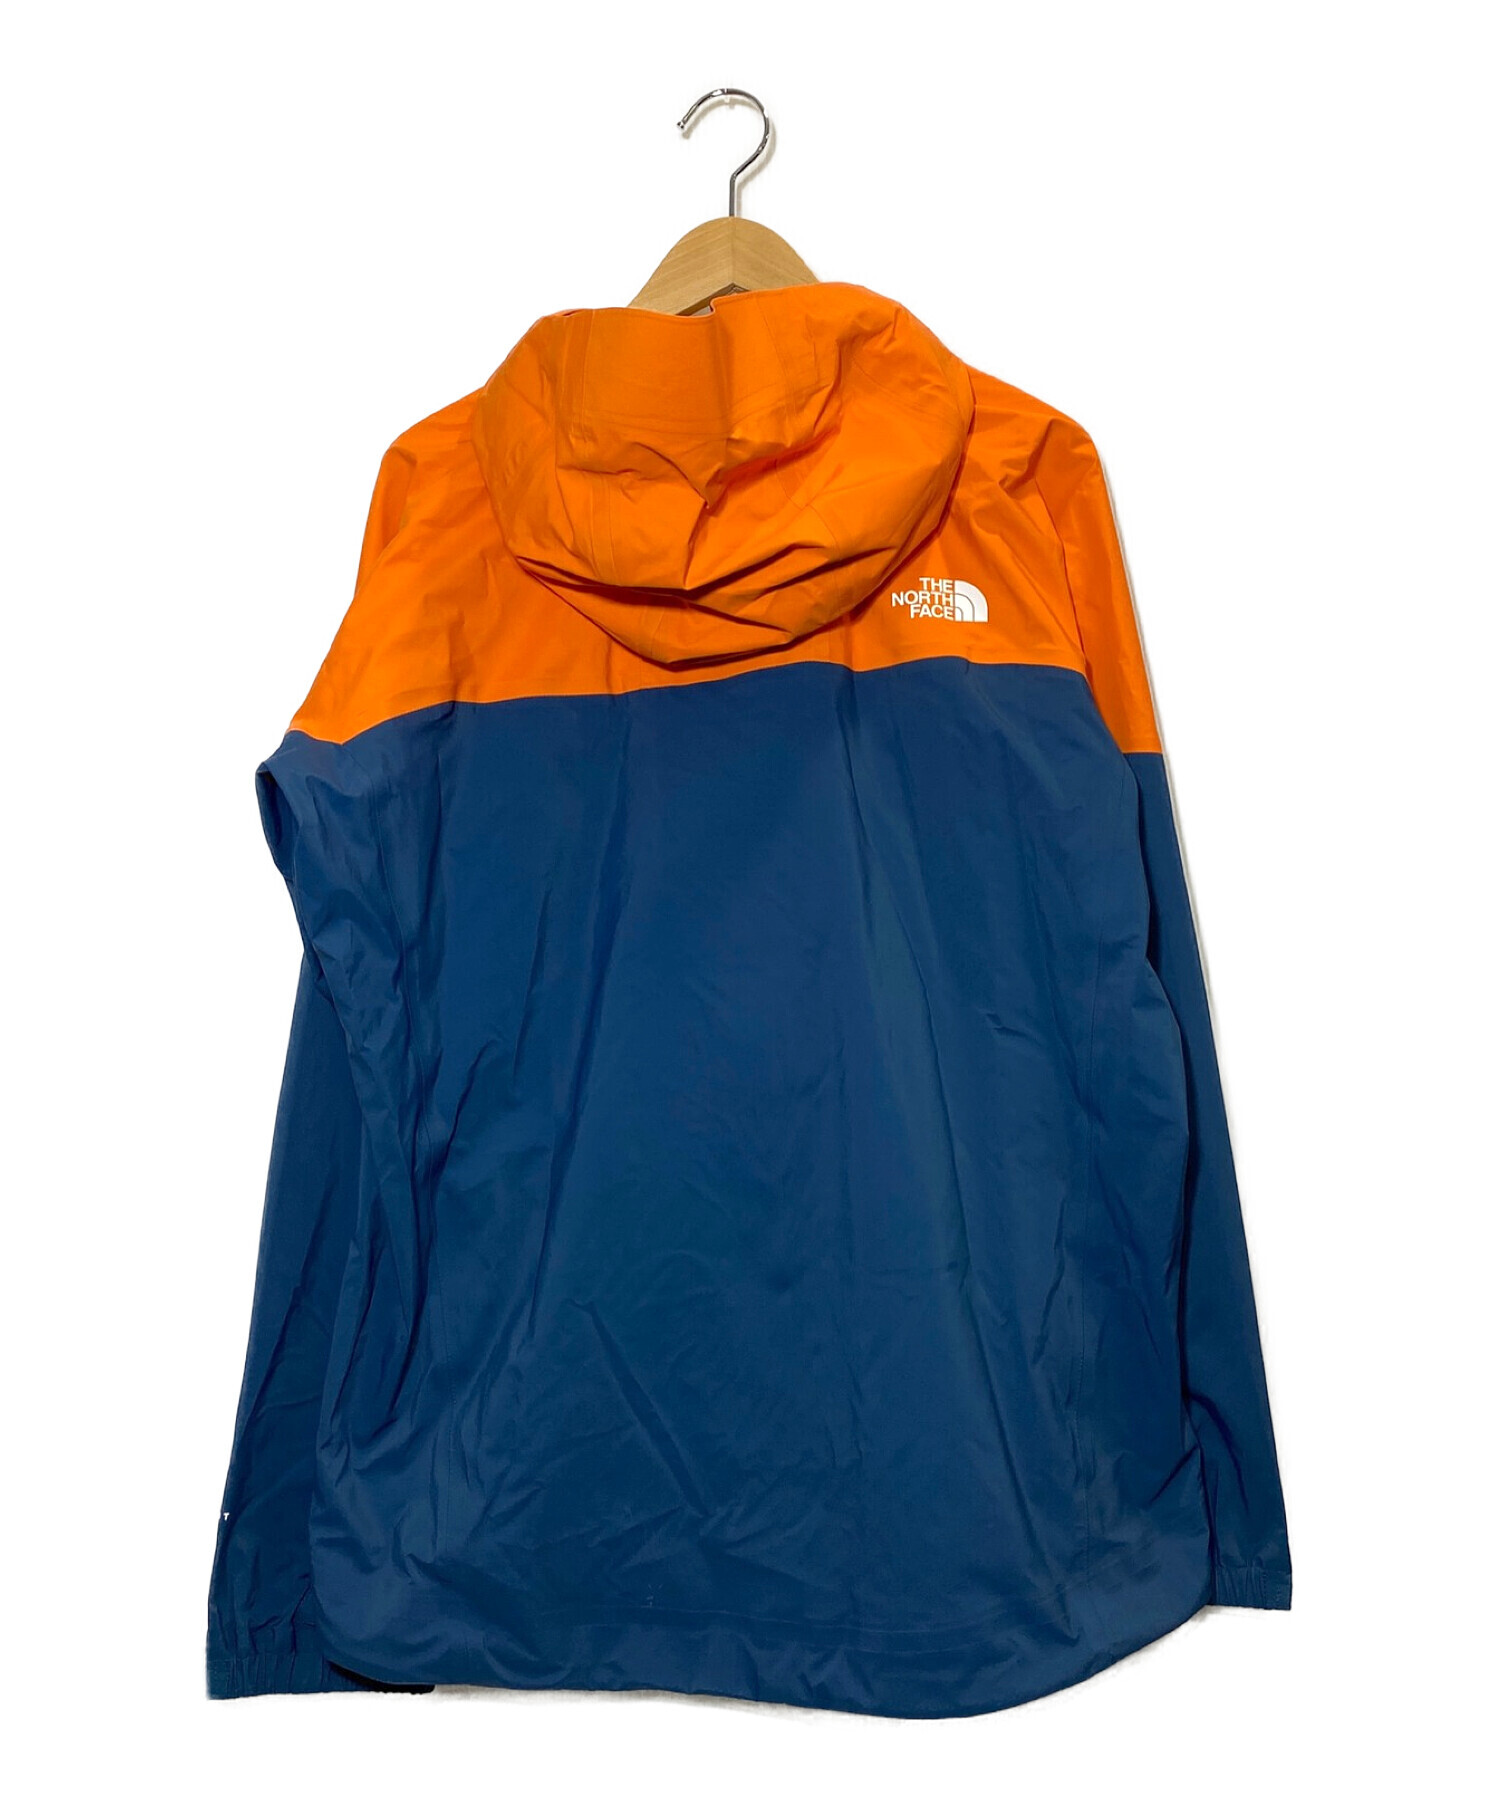 THE NORTH FACE (ザ ノース フェイス) フューチャーライトスーパーヘイズジャケット オレンジ サイズ:L 未使用品